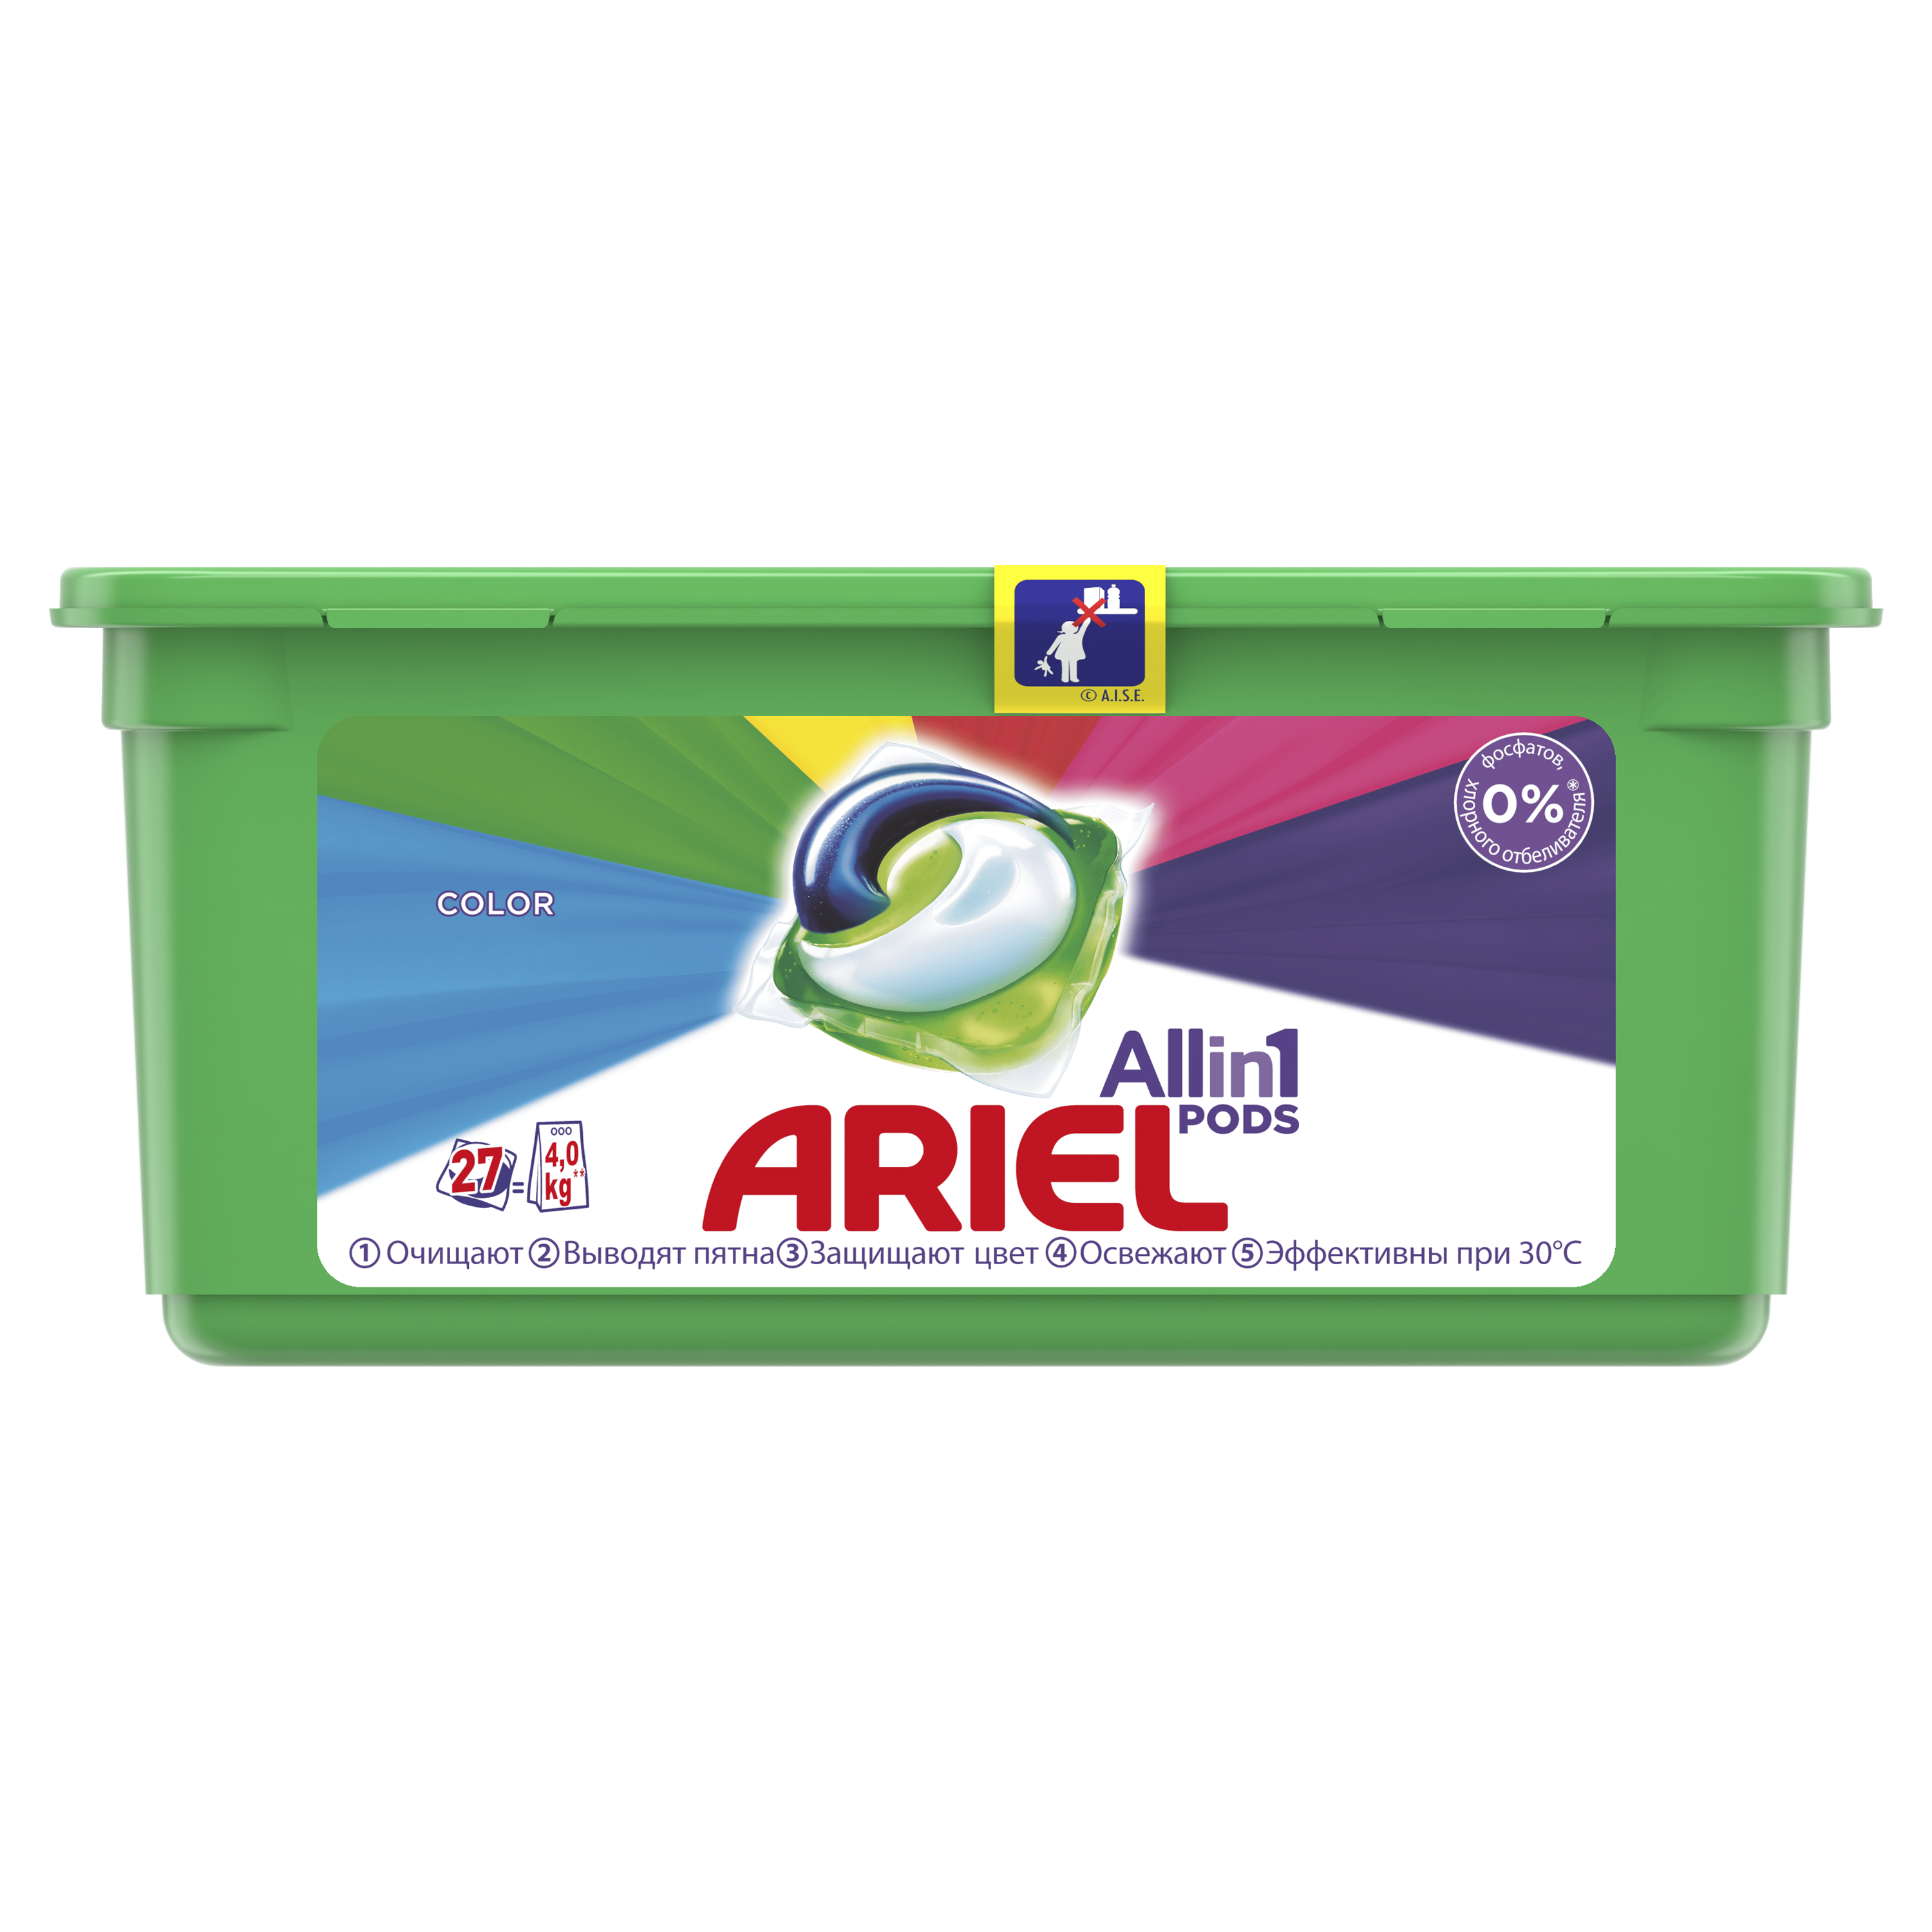 Капсули для прання Ariel Pods Все-в-1 Color, 27 шт. - фото 1